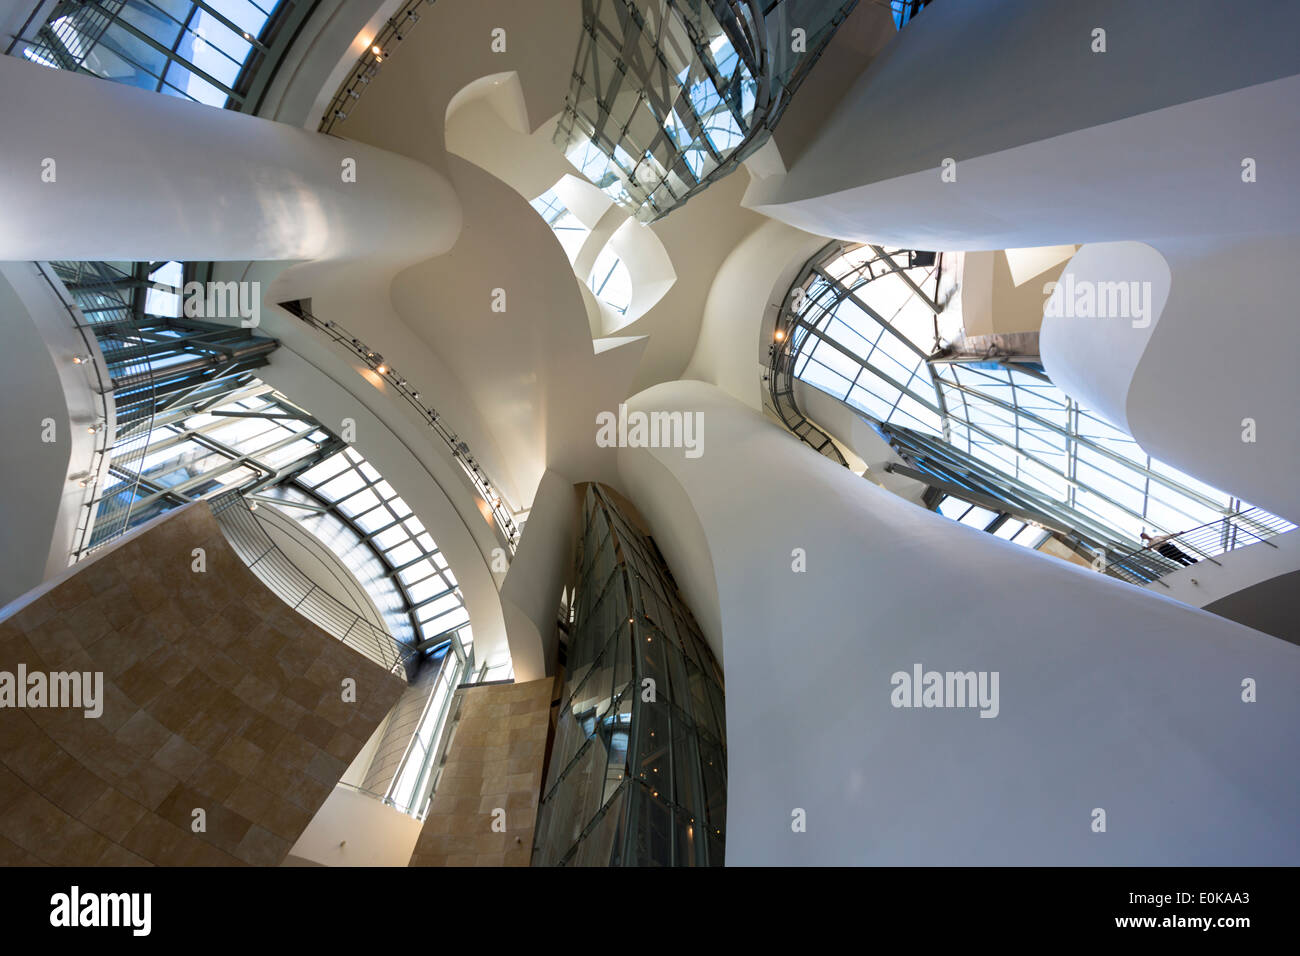 L'architecte Frank Gehry Guggenheim Museum design architectural futuriste intérieur à Bilbao, Pays Basque, Espagne Banque D'Images